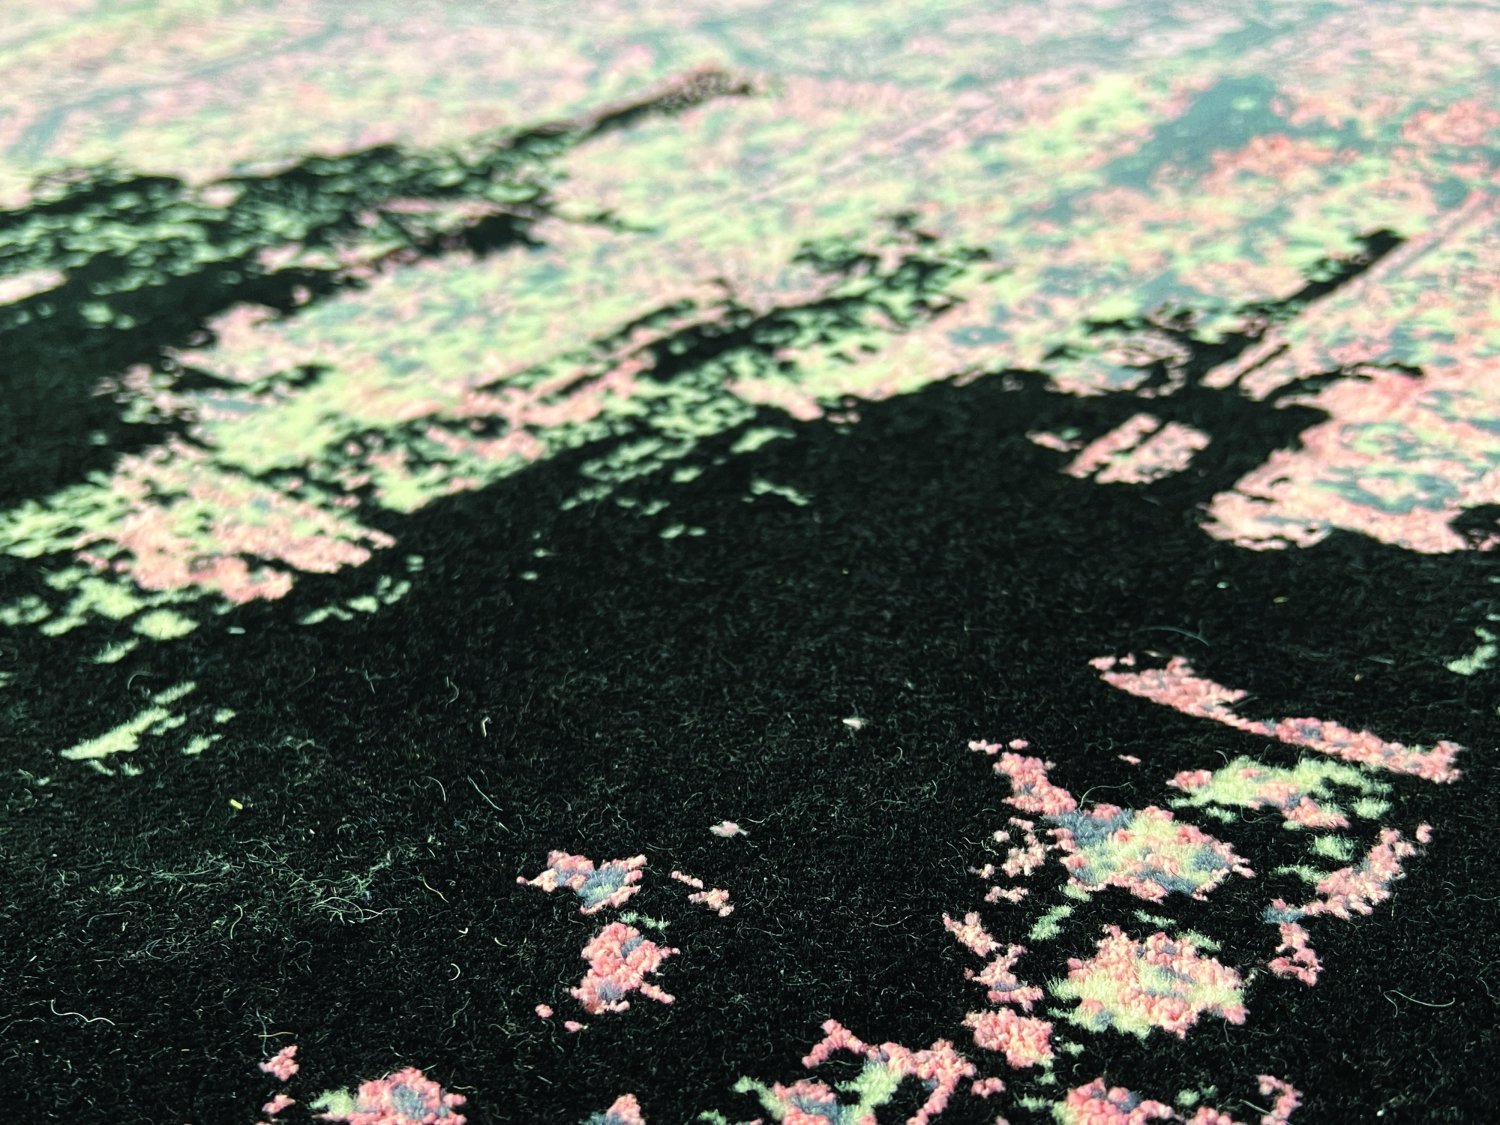 فرش پشمی ماشینی طبیعی و ارگانیک کد 0127 - زمینه مشکی - حاشیه گلبهی